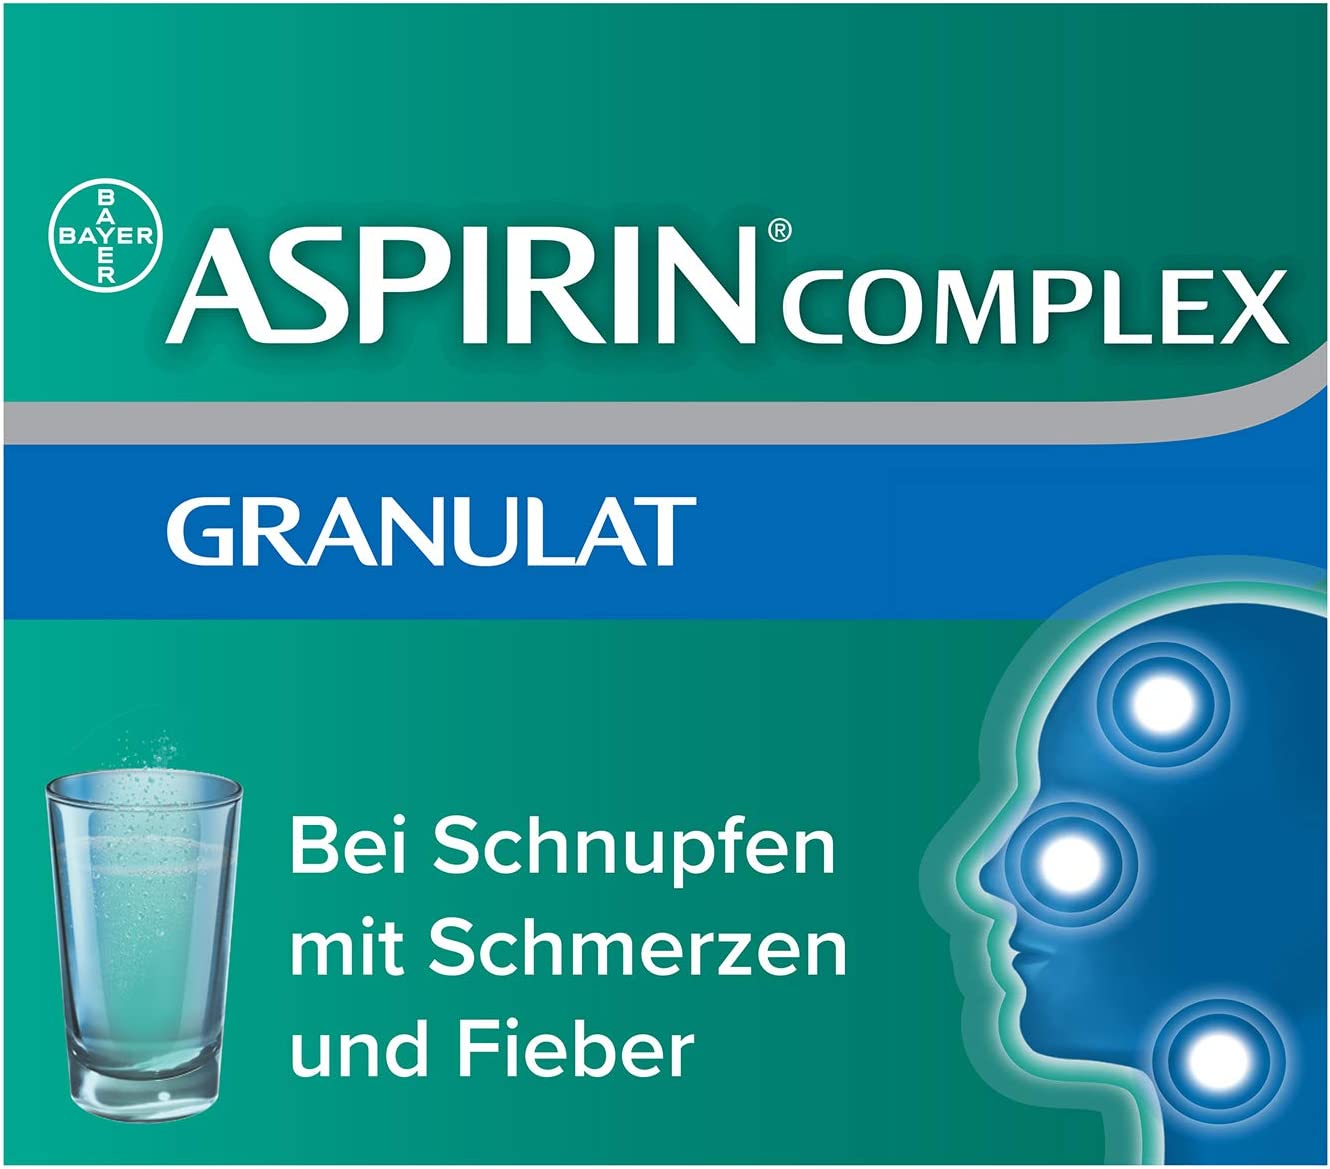 ASPIRIN COMPLEX Beutel mit Granulat - bei Schnupfen, Kopf-, Hals-, und Gliederschmerzen sowie Fieber